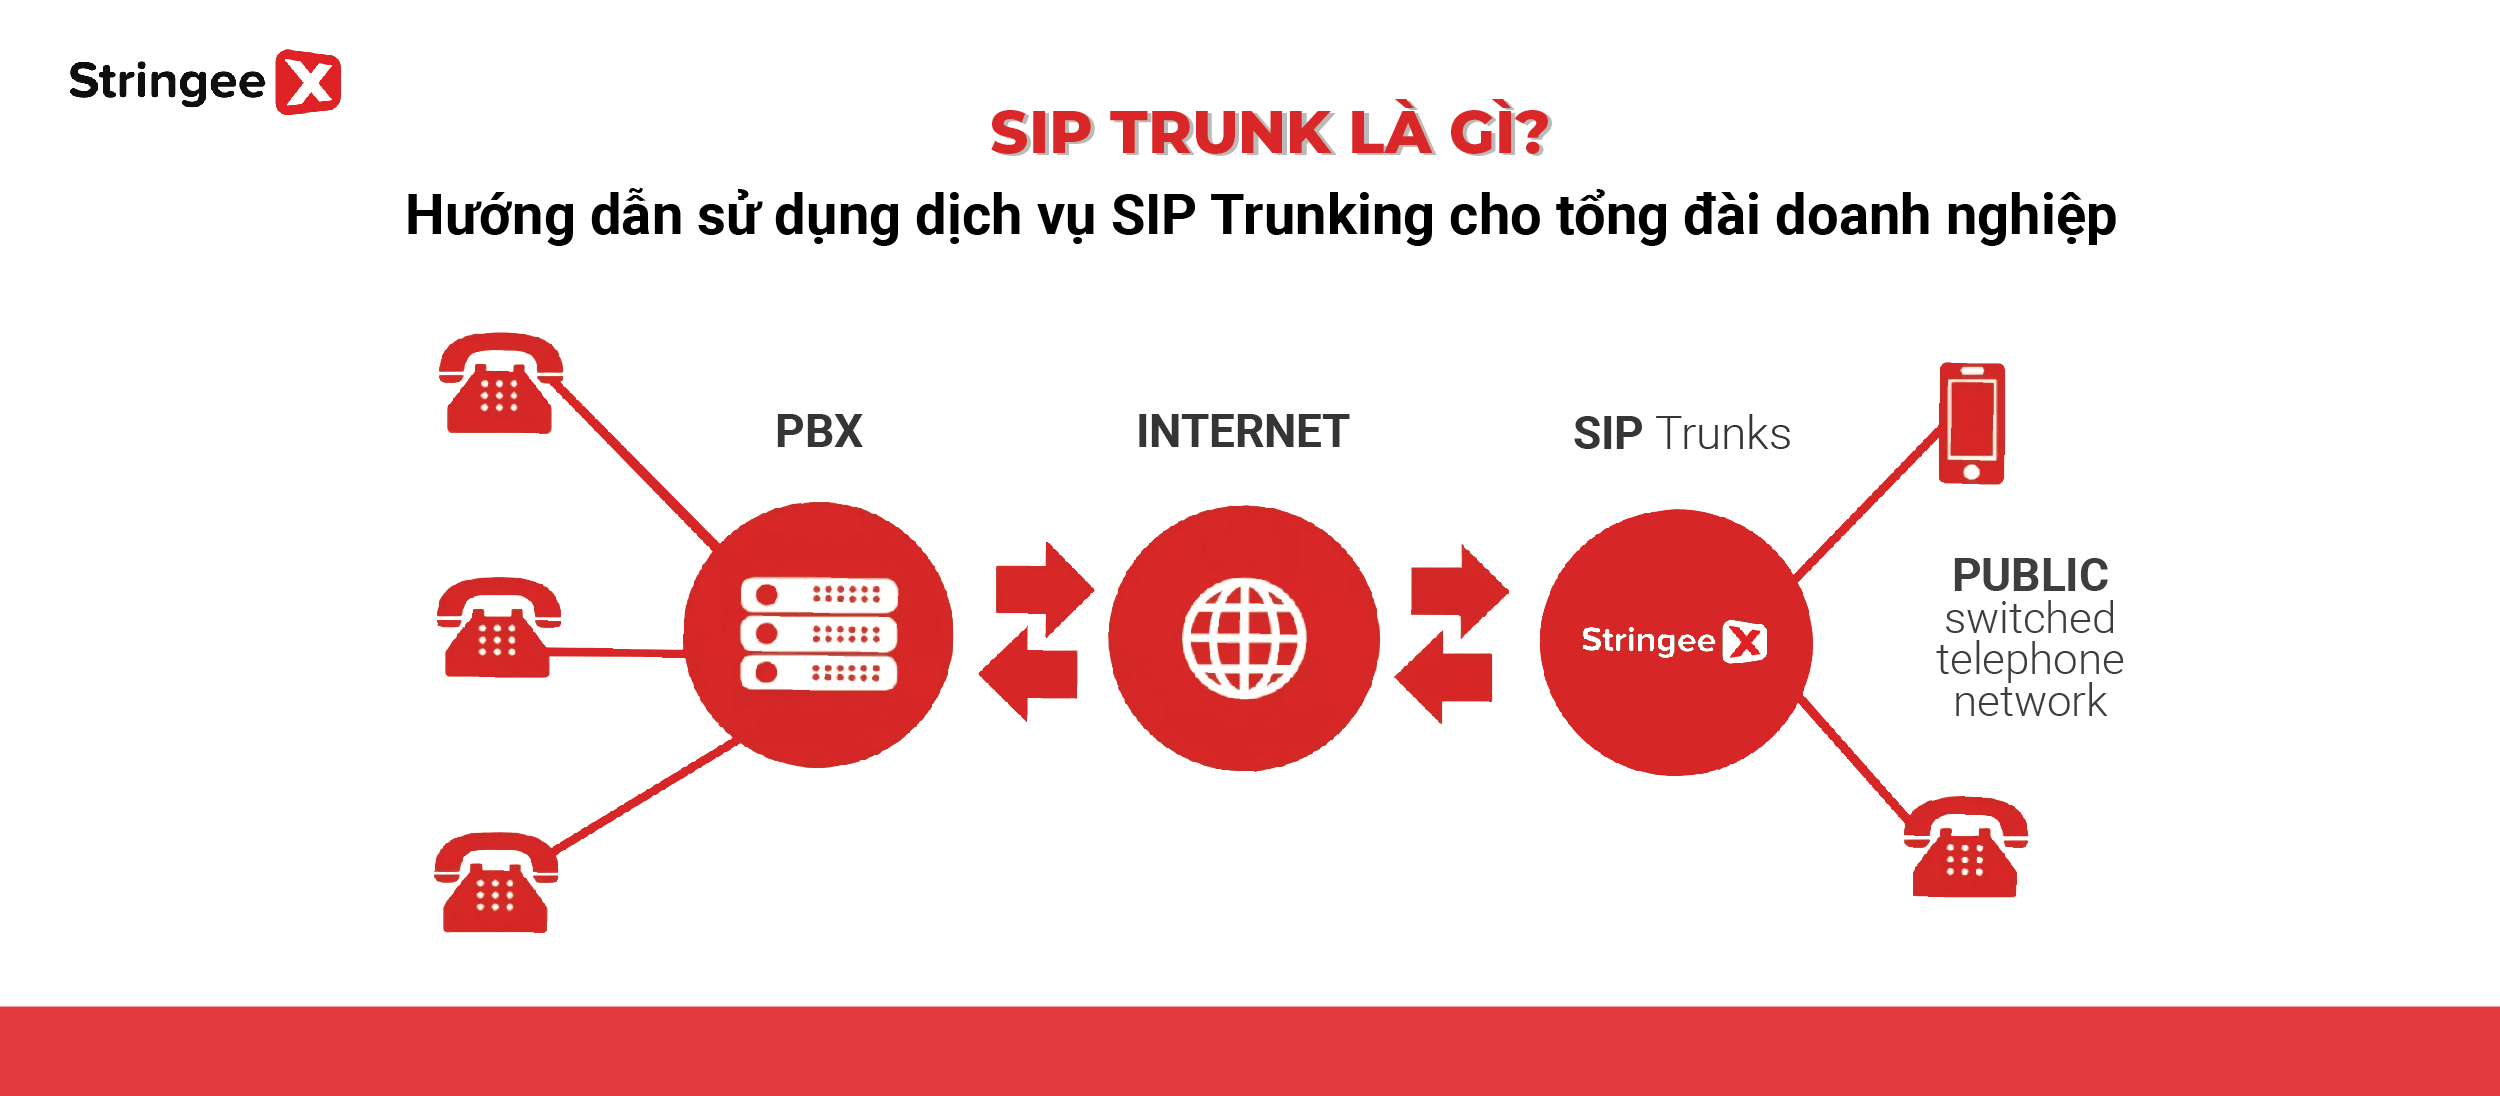 SIP Trunking là gì? Hướng dẫn sử dụng dịch vụ SIP Trunking cho tổng đài doanh nghiệp